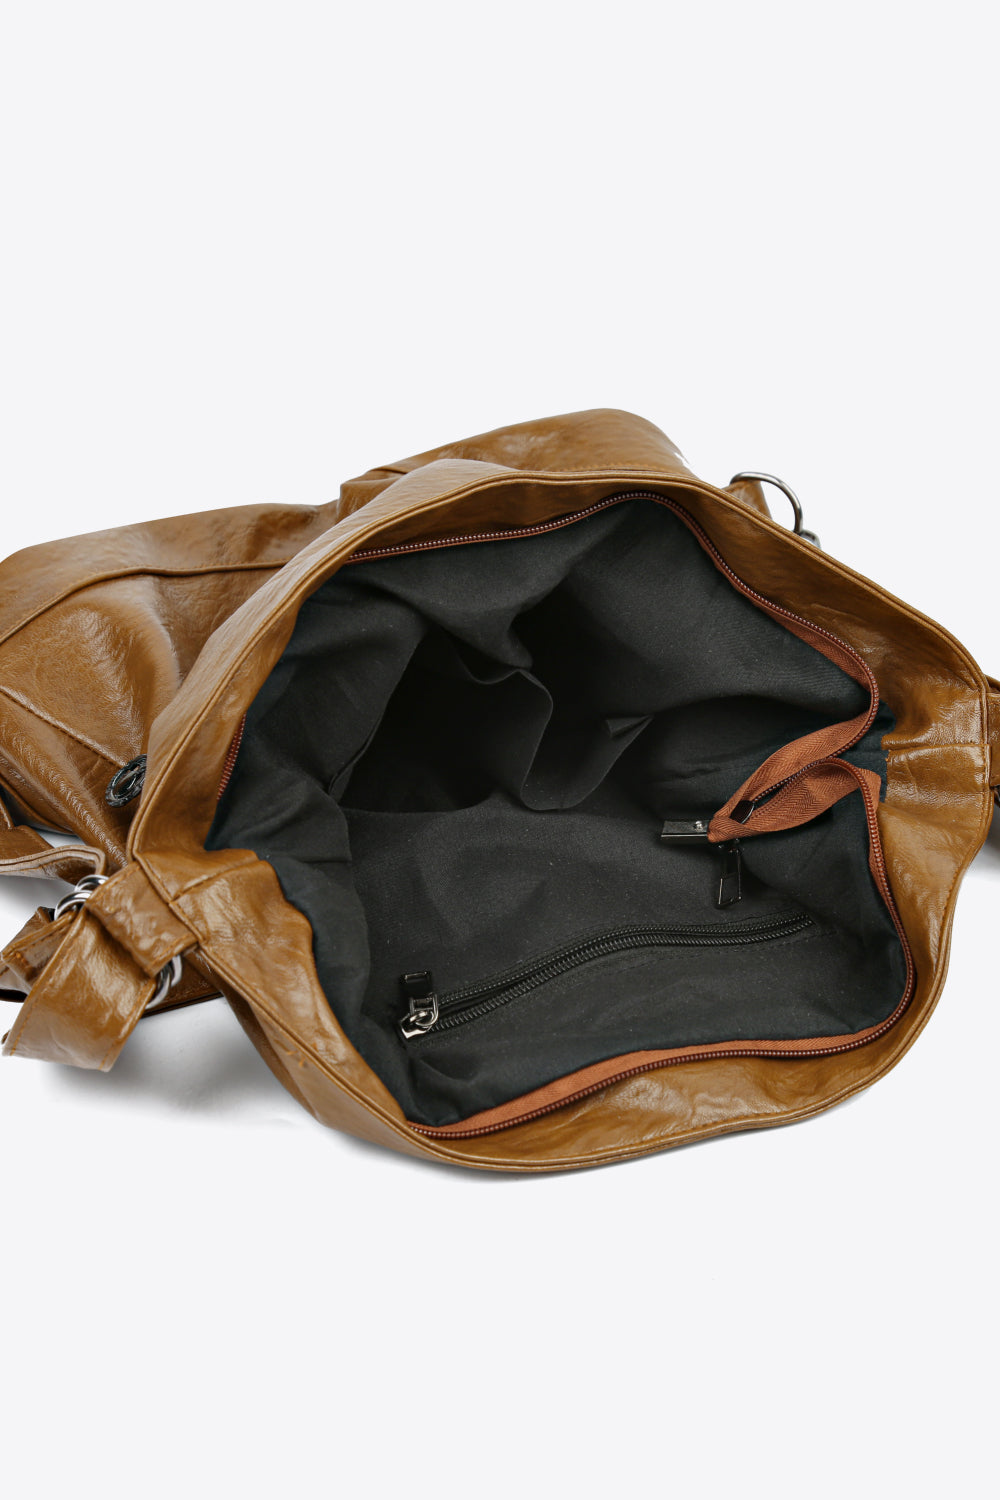 PU Leather Shoulder Bag - AllIn Computer